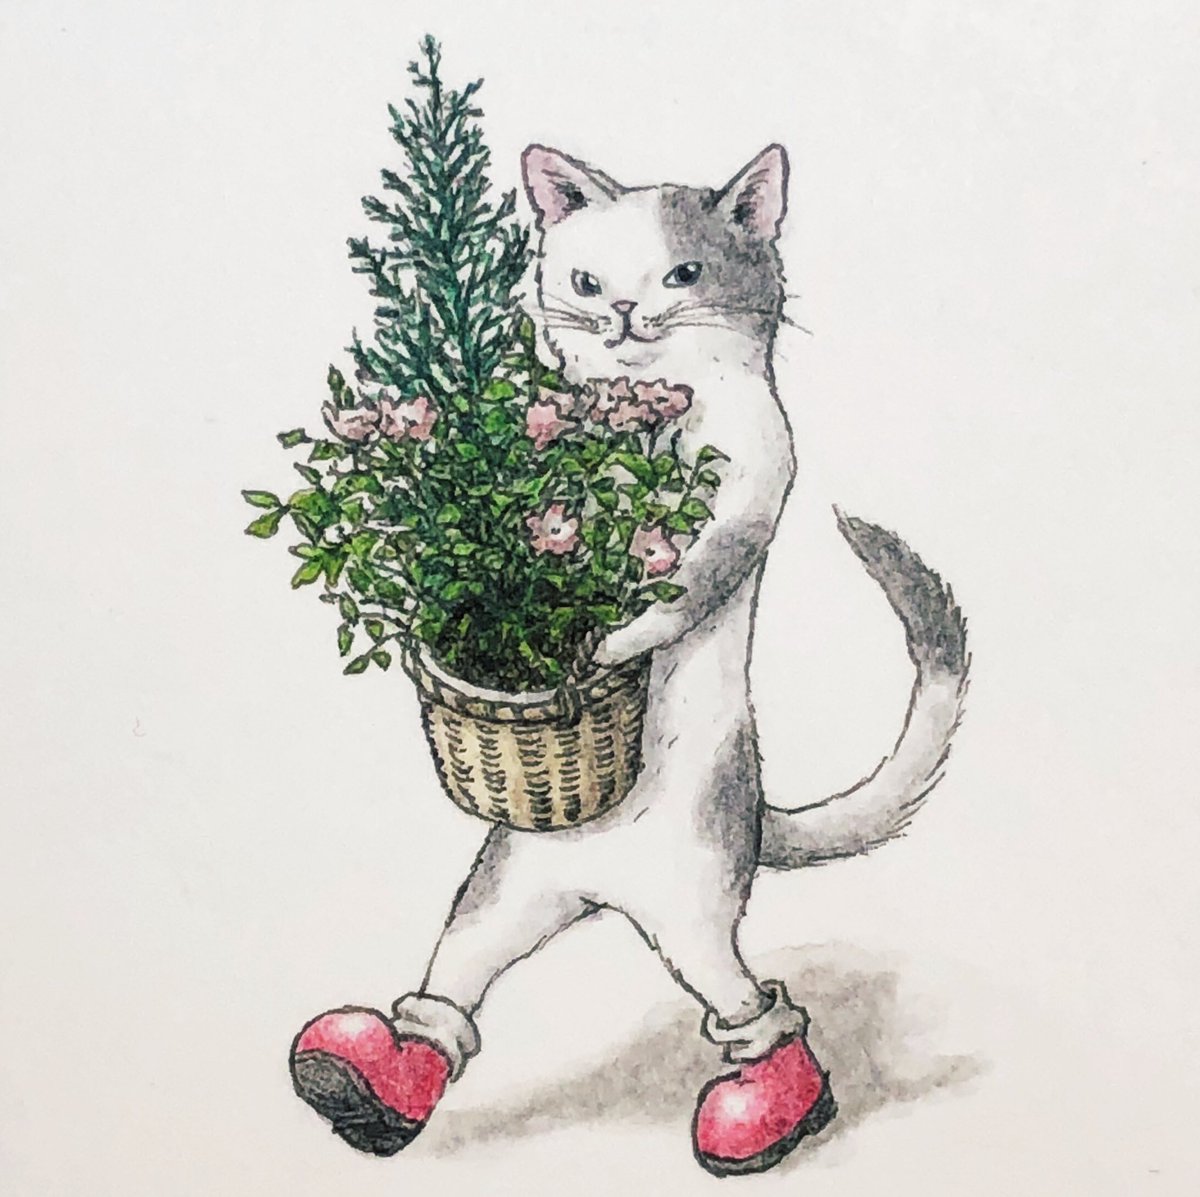 「『花と猫?』
 #イラスト  #過去絵 」|エルクポットの動物群像絵🐾のイラスト